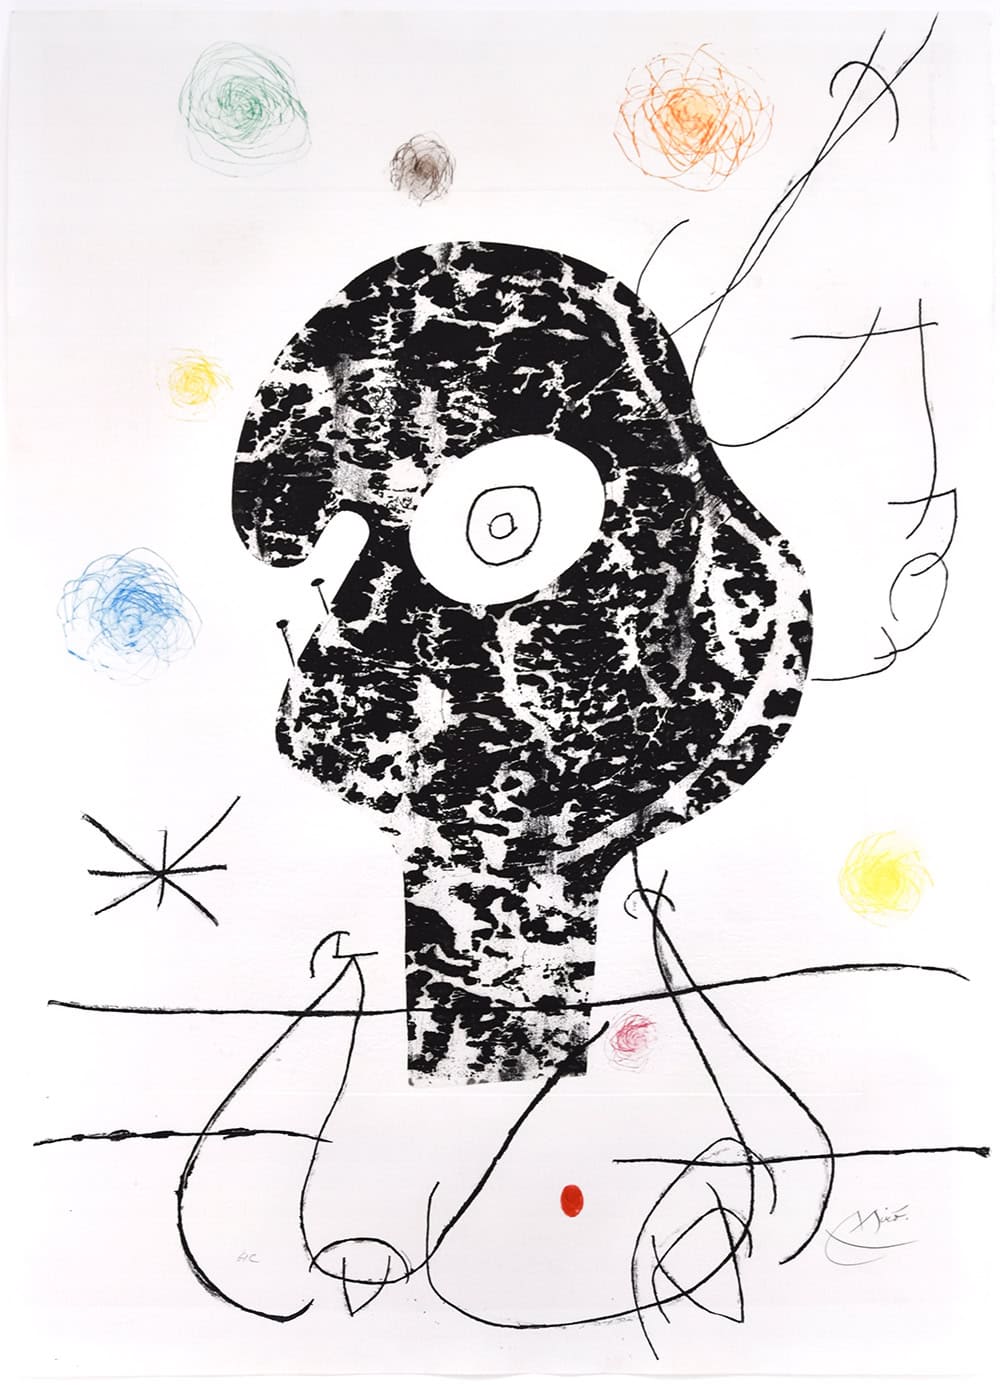 Joan Miró, Emehpylop, 1968